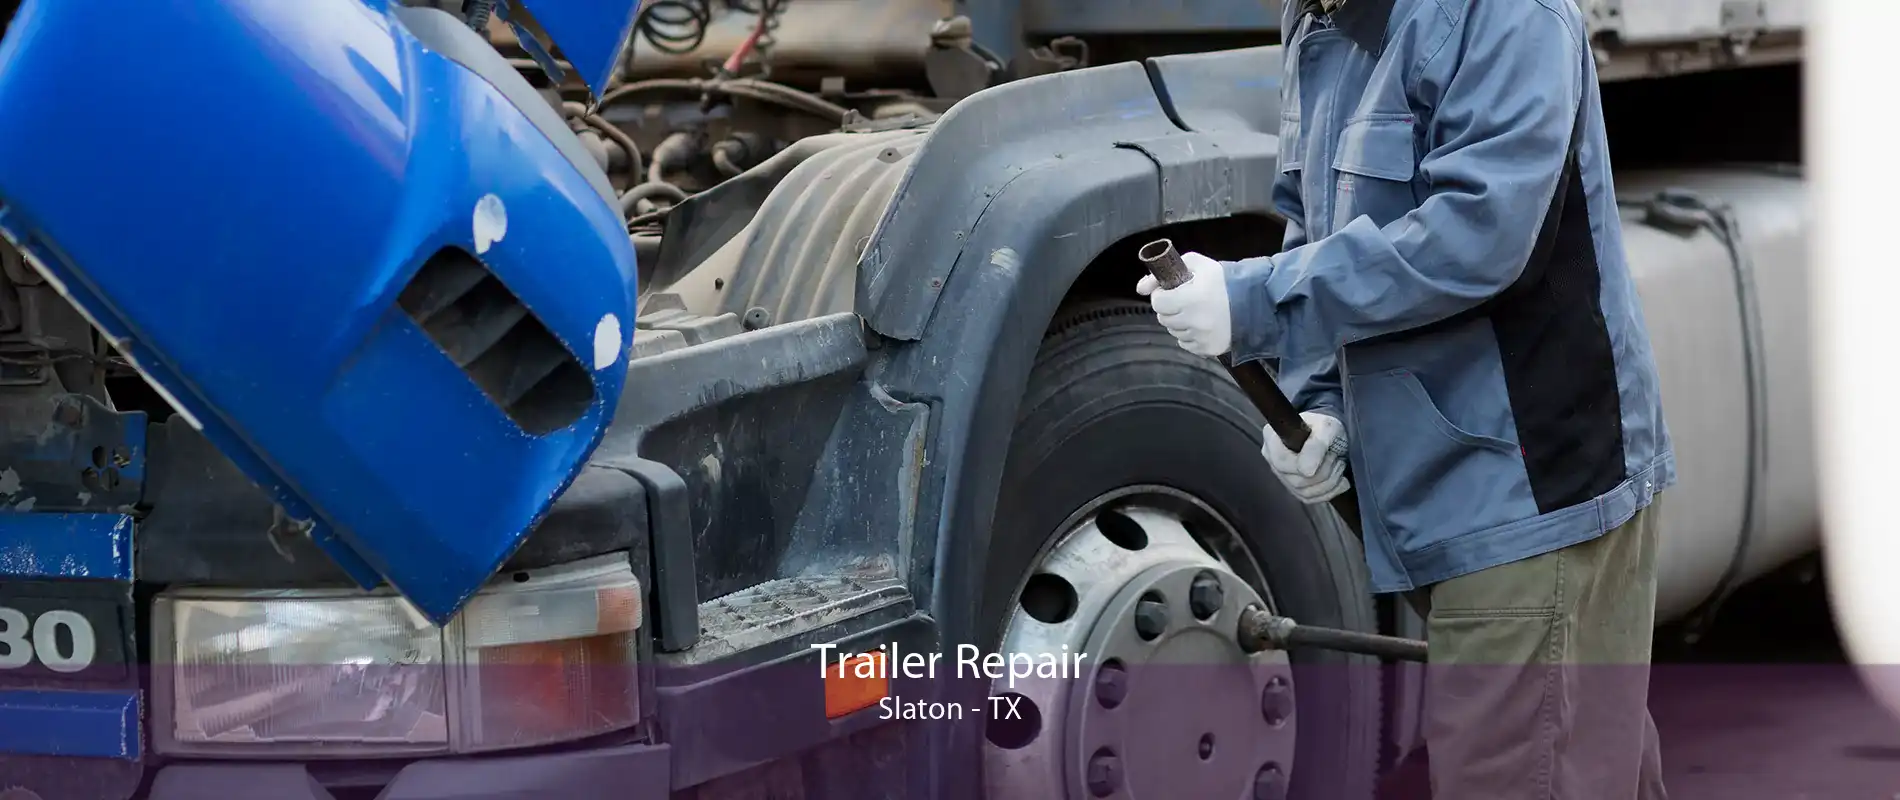 Trailer Repair Slaton - TX